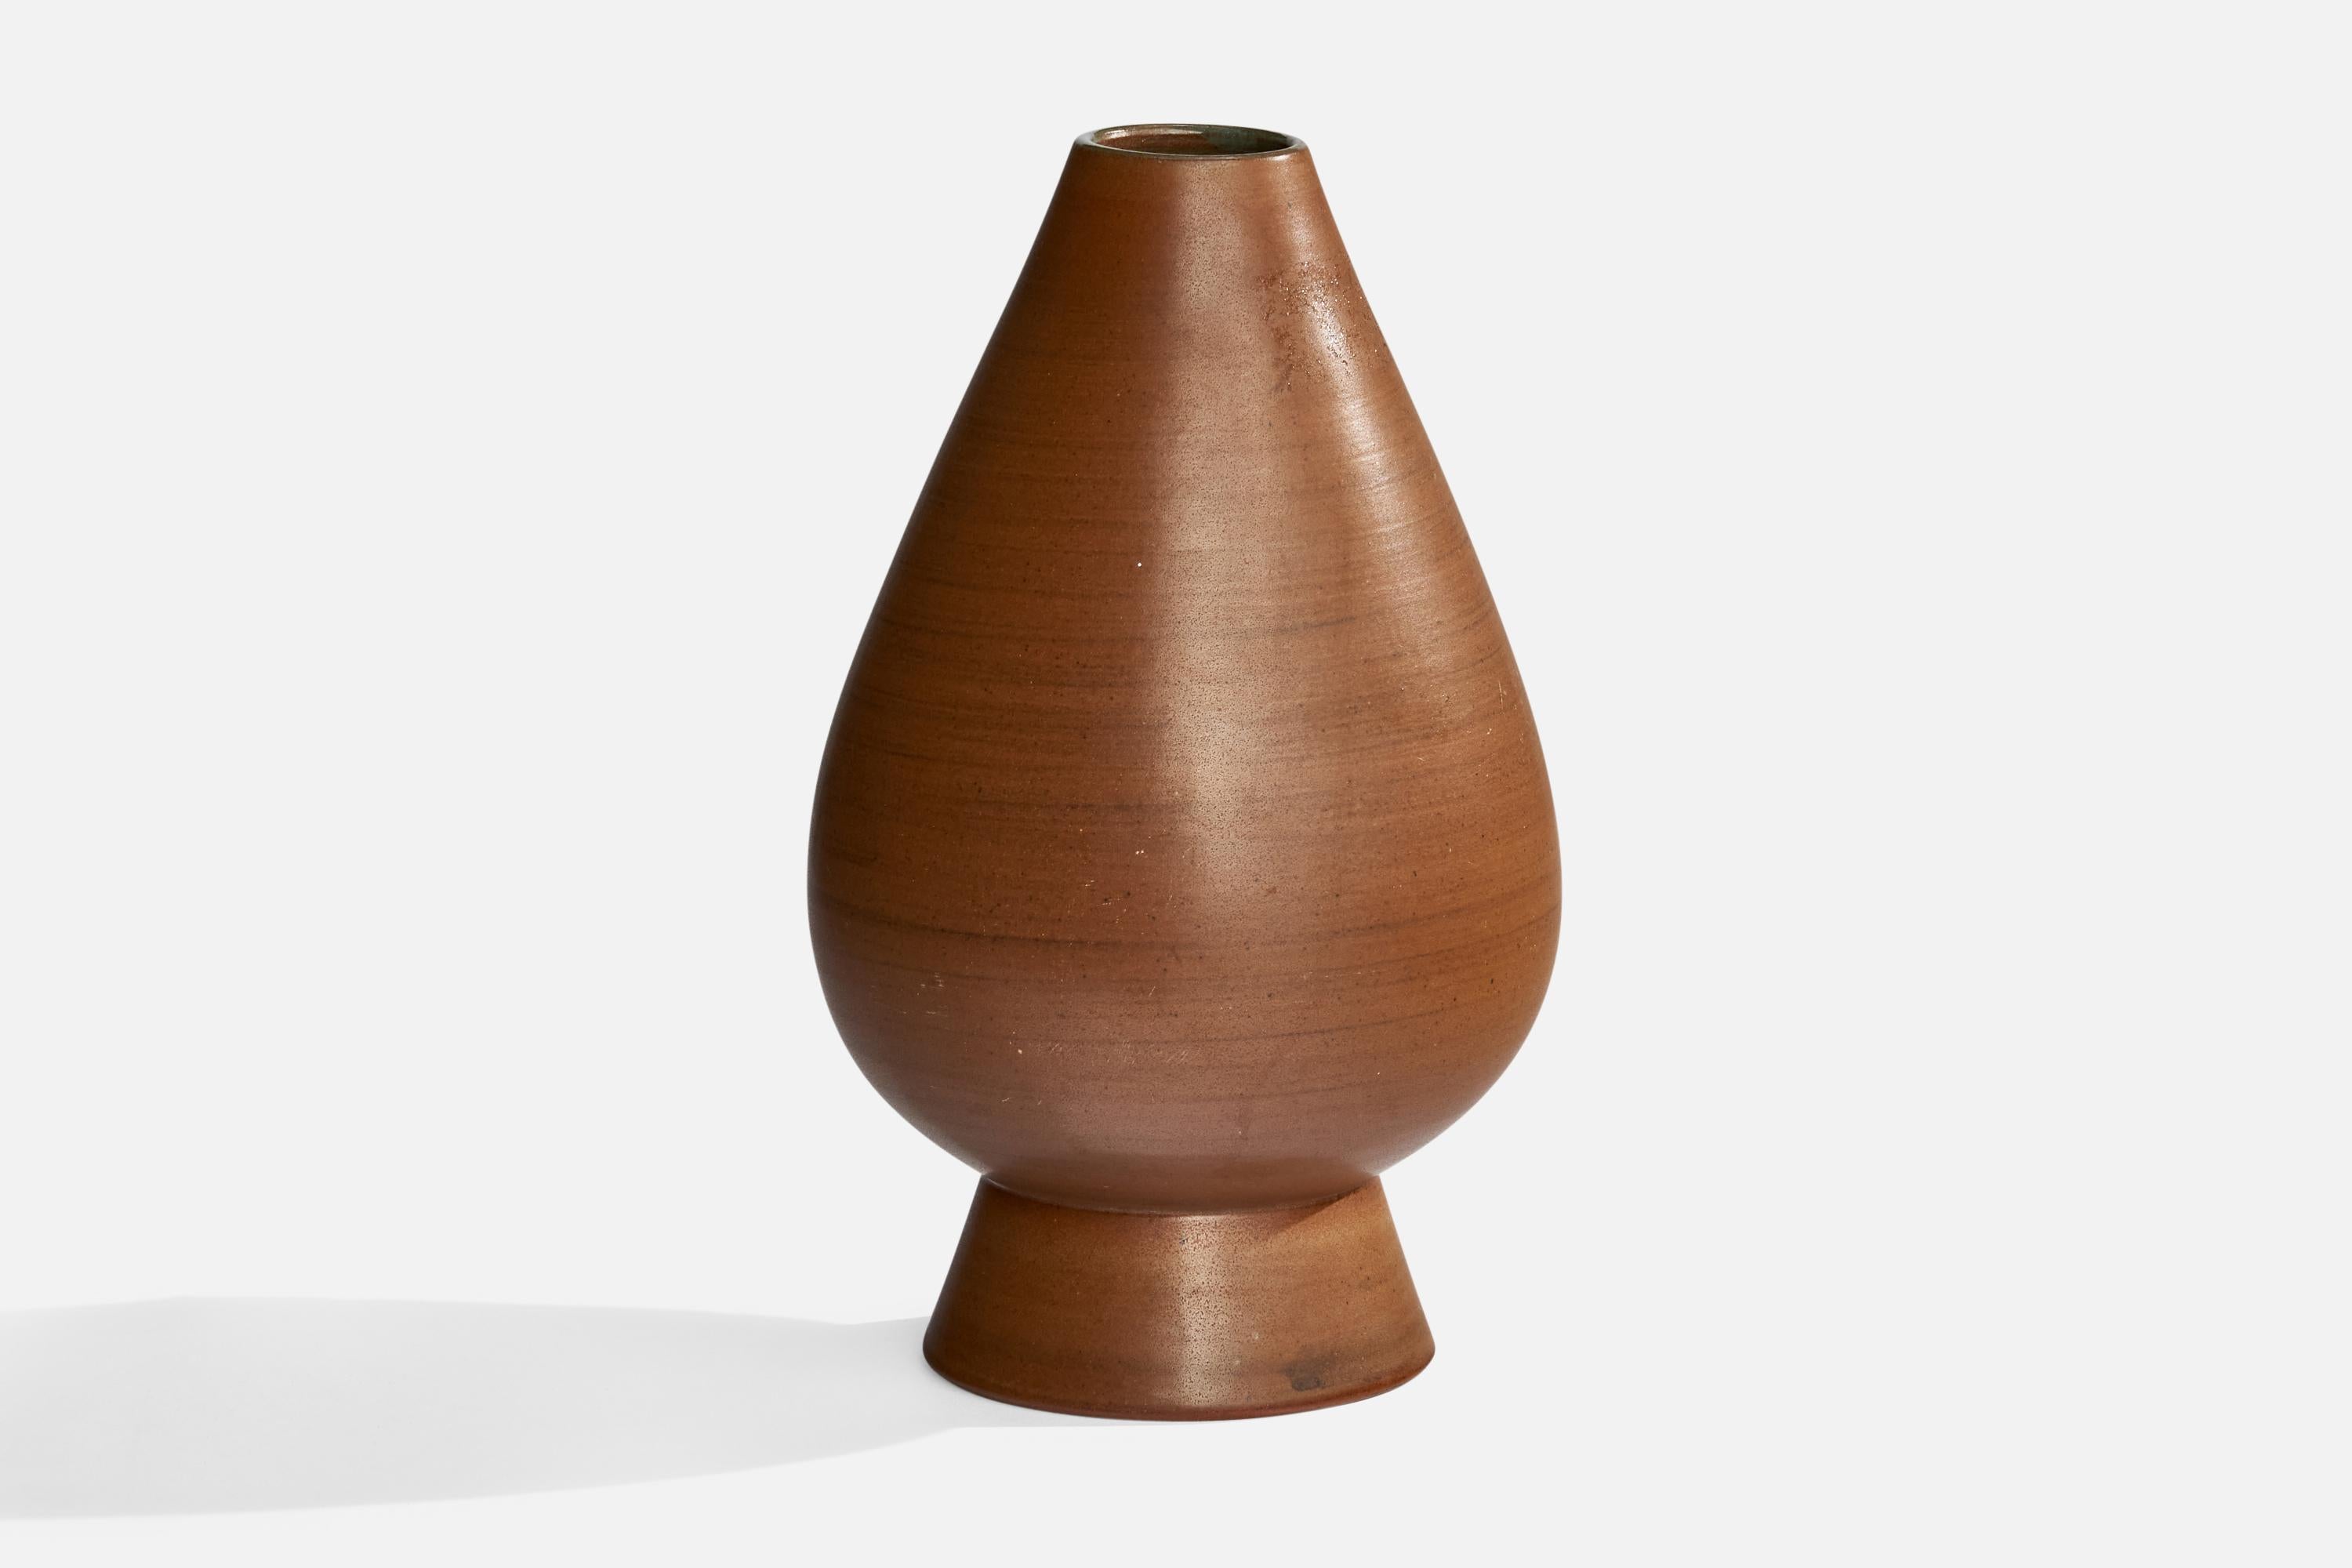 A brown-glazed vase designed and produced by Nittsjö, Sweden, c. 1950s.